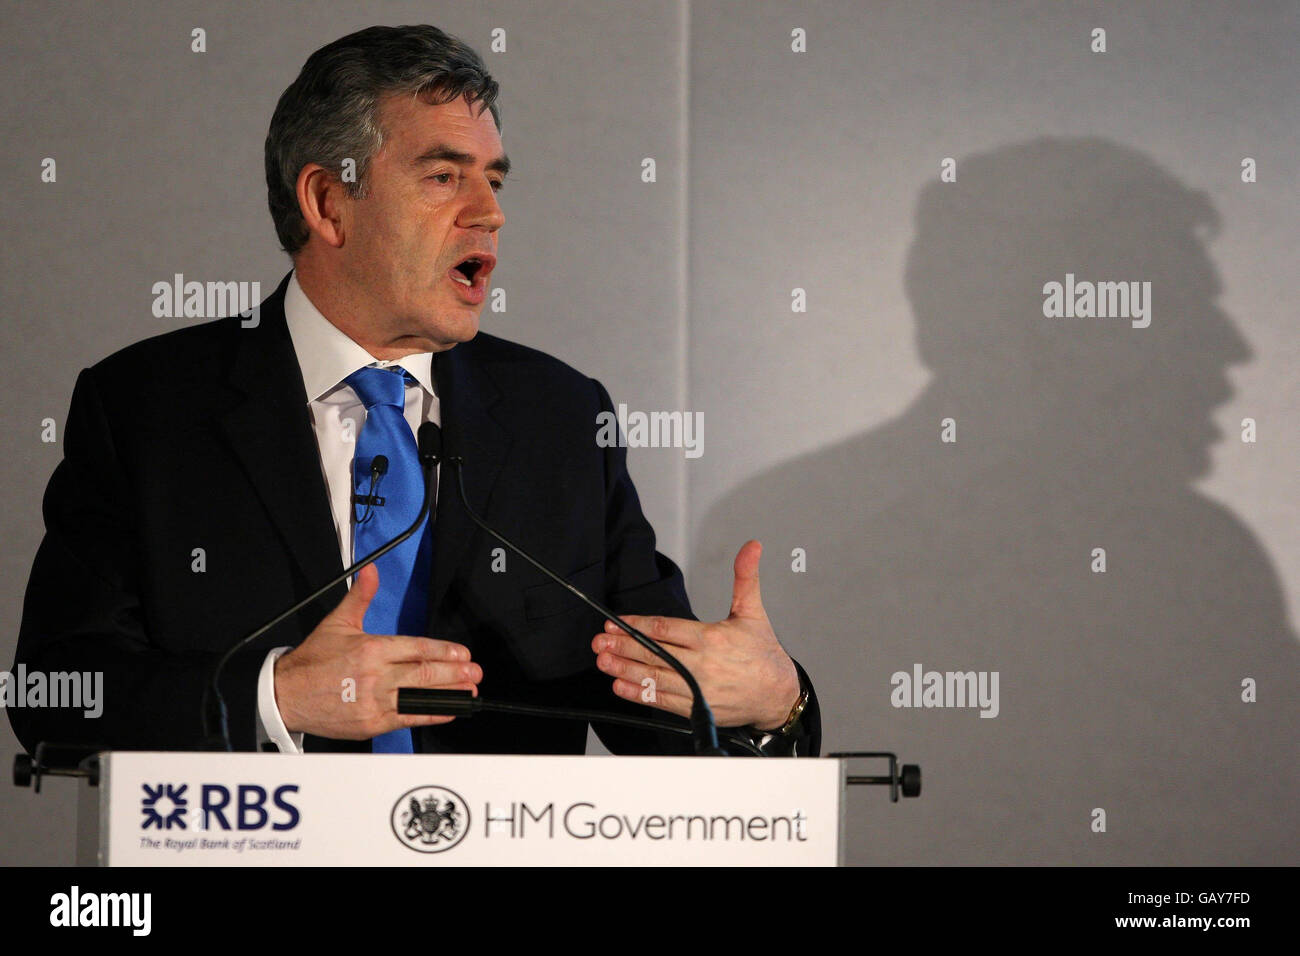 Il primo ministro Gordon Brown parla al vertice governativo sull'economia a basse emissioni di carbonio, al Tate Modern di Londra. Foto Stock